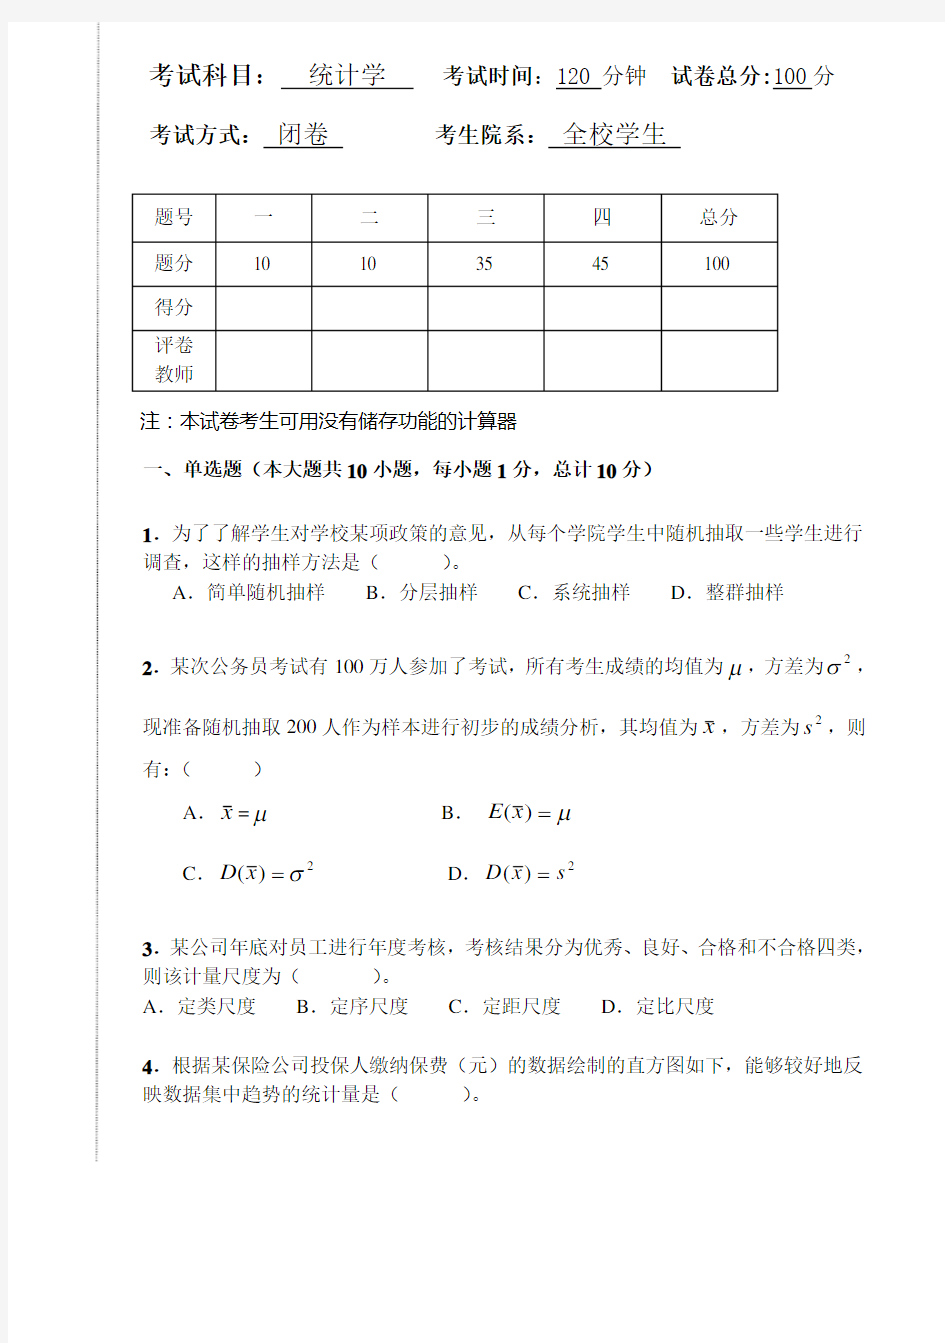 统计系-统计学考试题-2012-2013(1)A卷